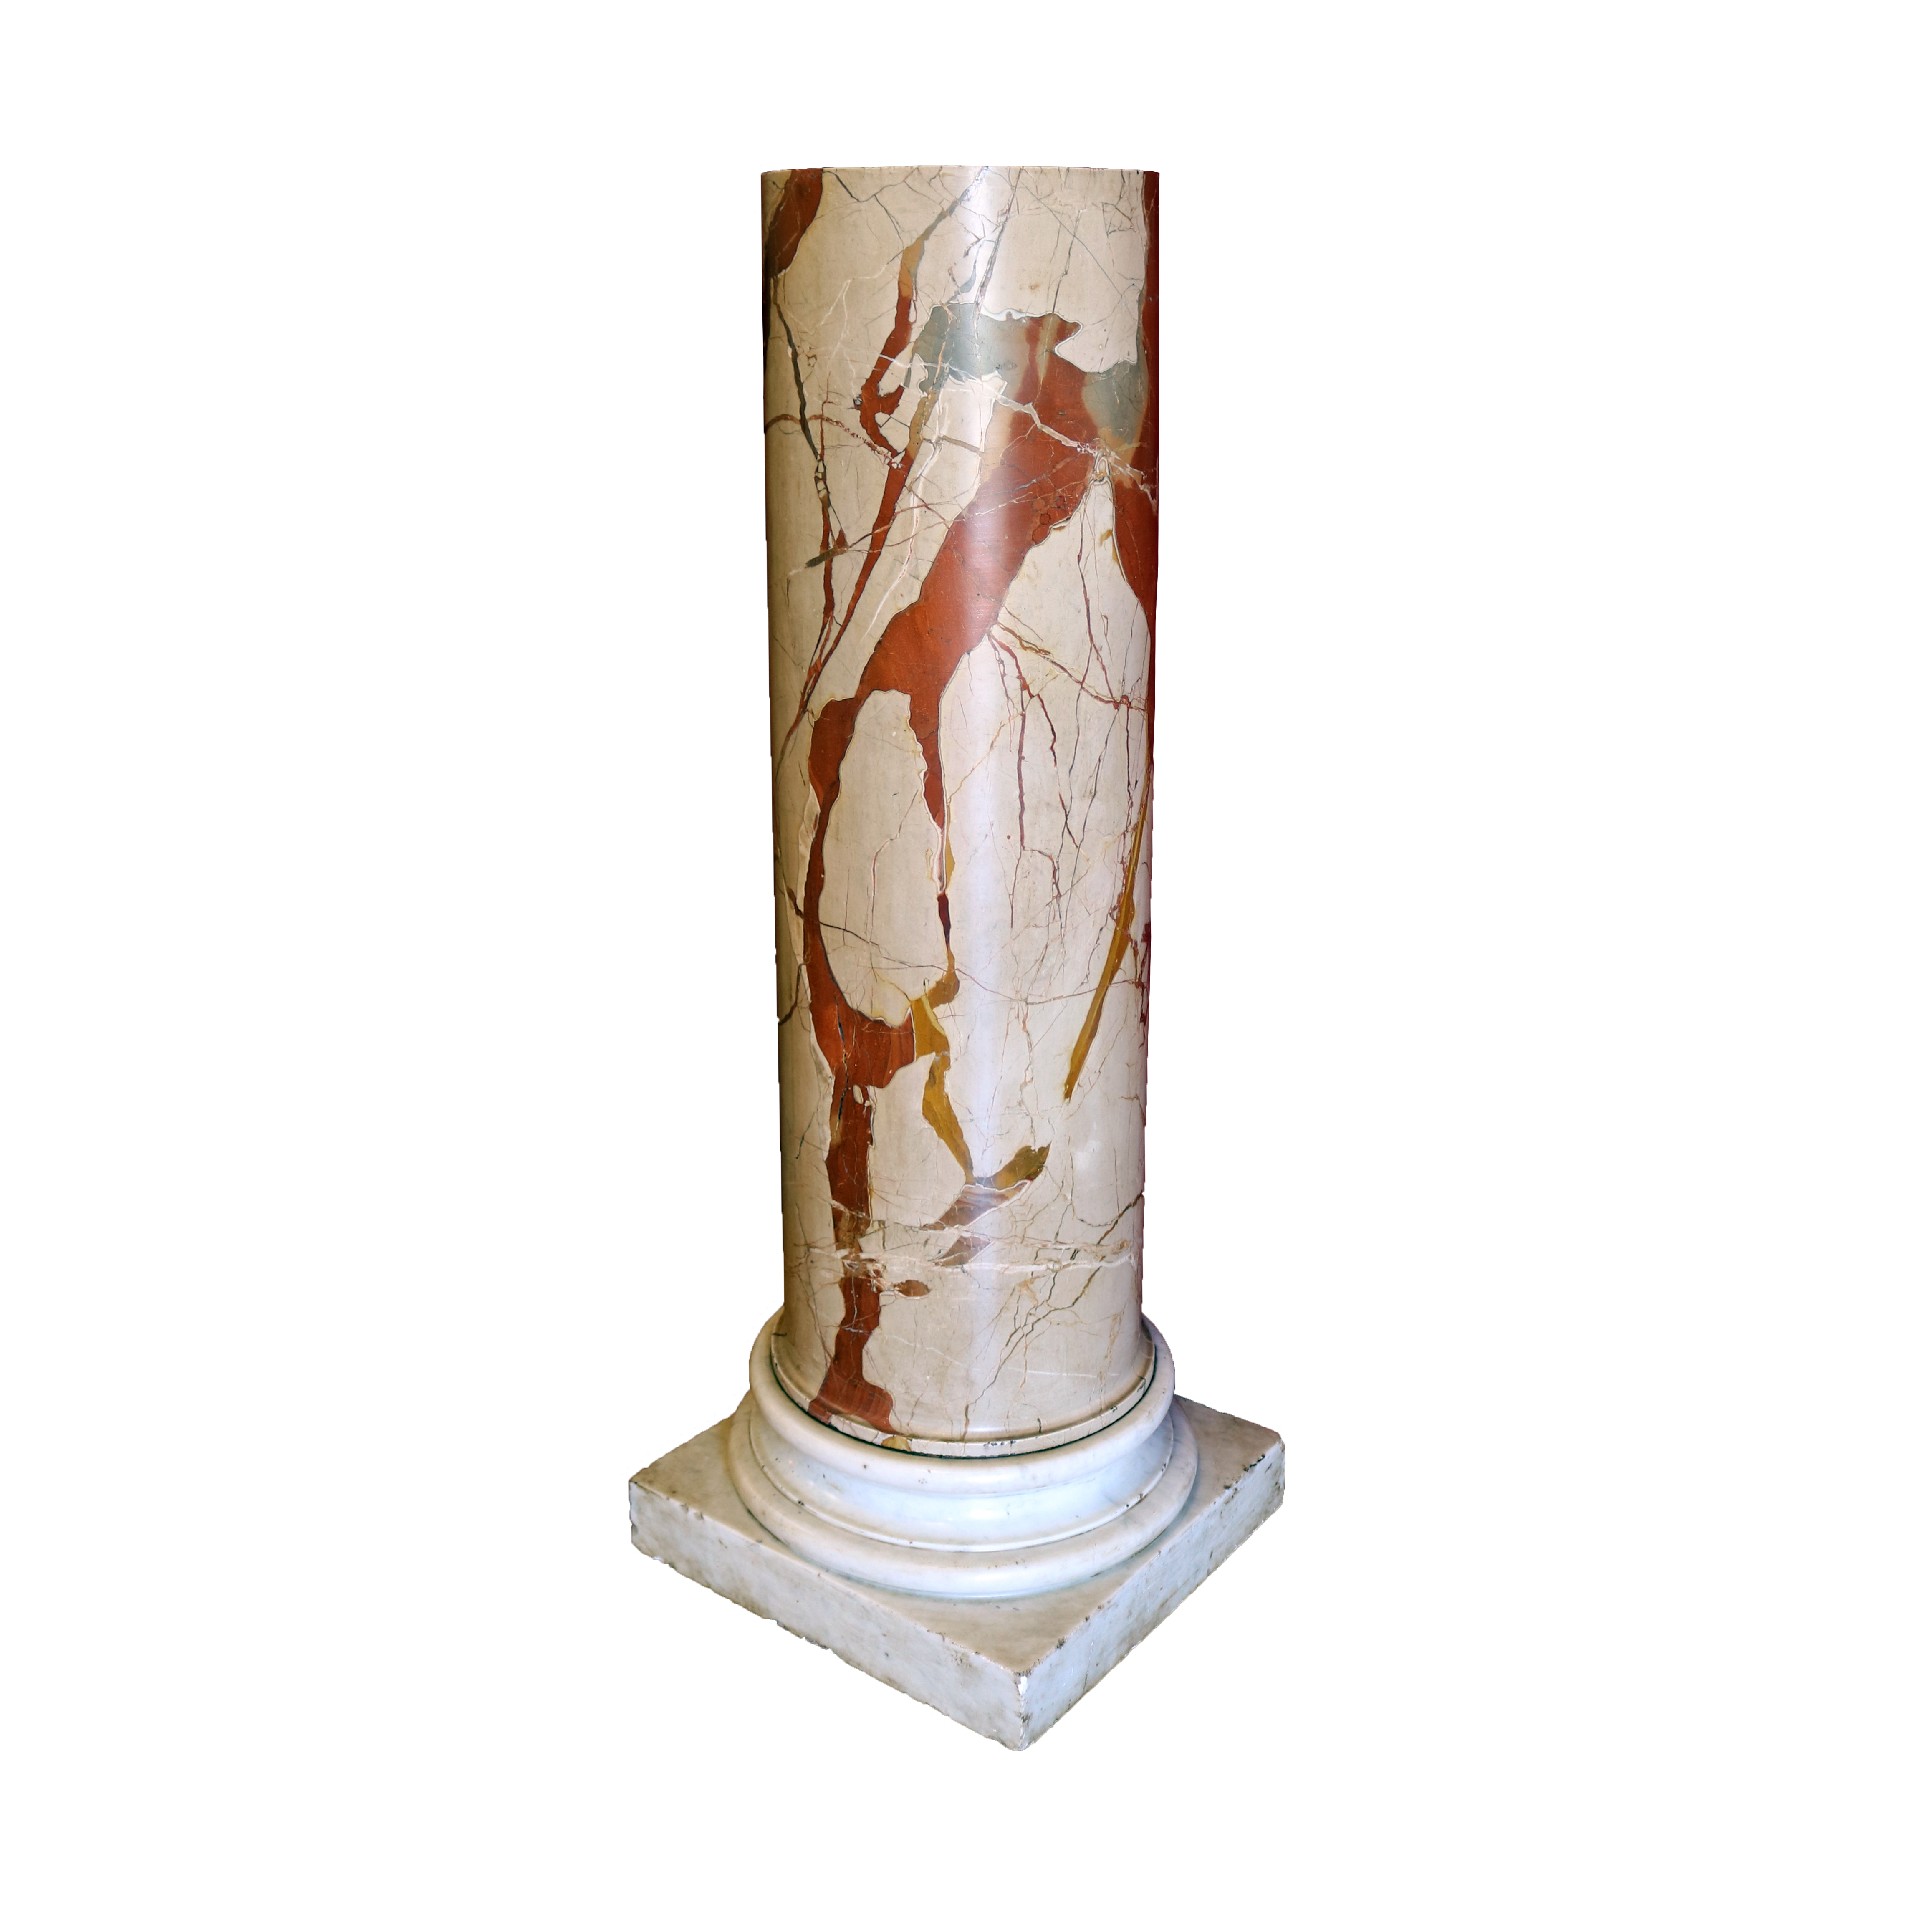 Antica colonna in marmo. Epoca 1800. - Colonne antiche - Architettura - Prodotti - Antichità Fiorillo